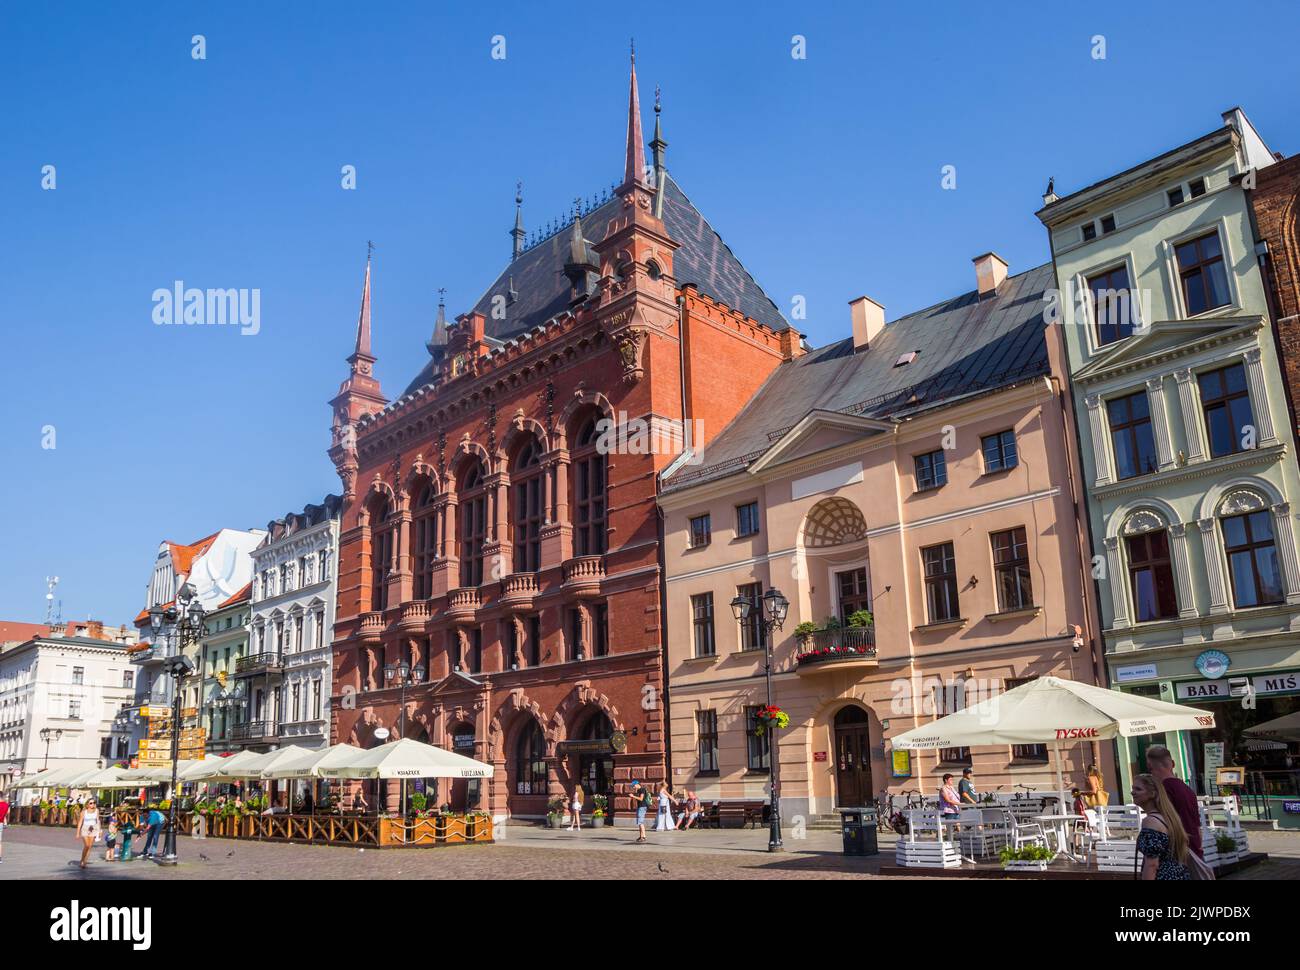 Histórico edificio Artus Manor en la plaza del mercado central de Torun, Polonia Foto de stock